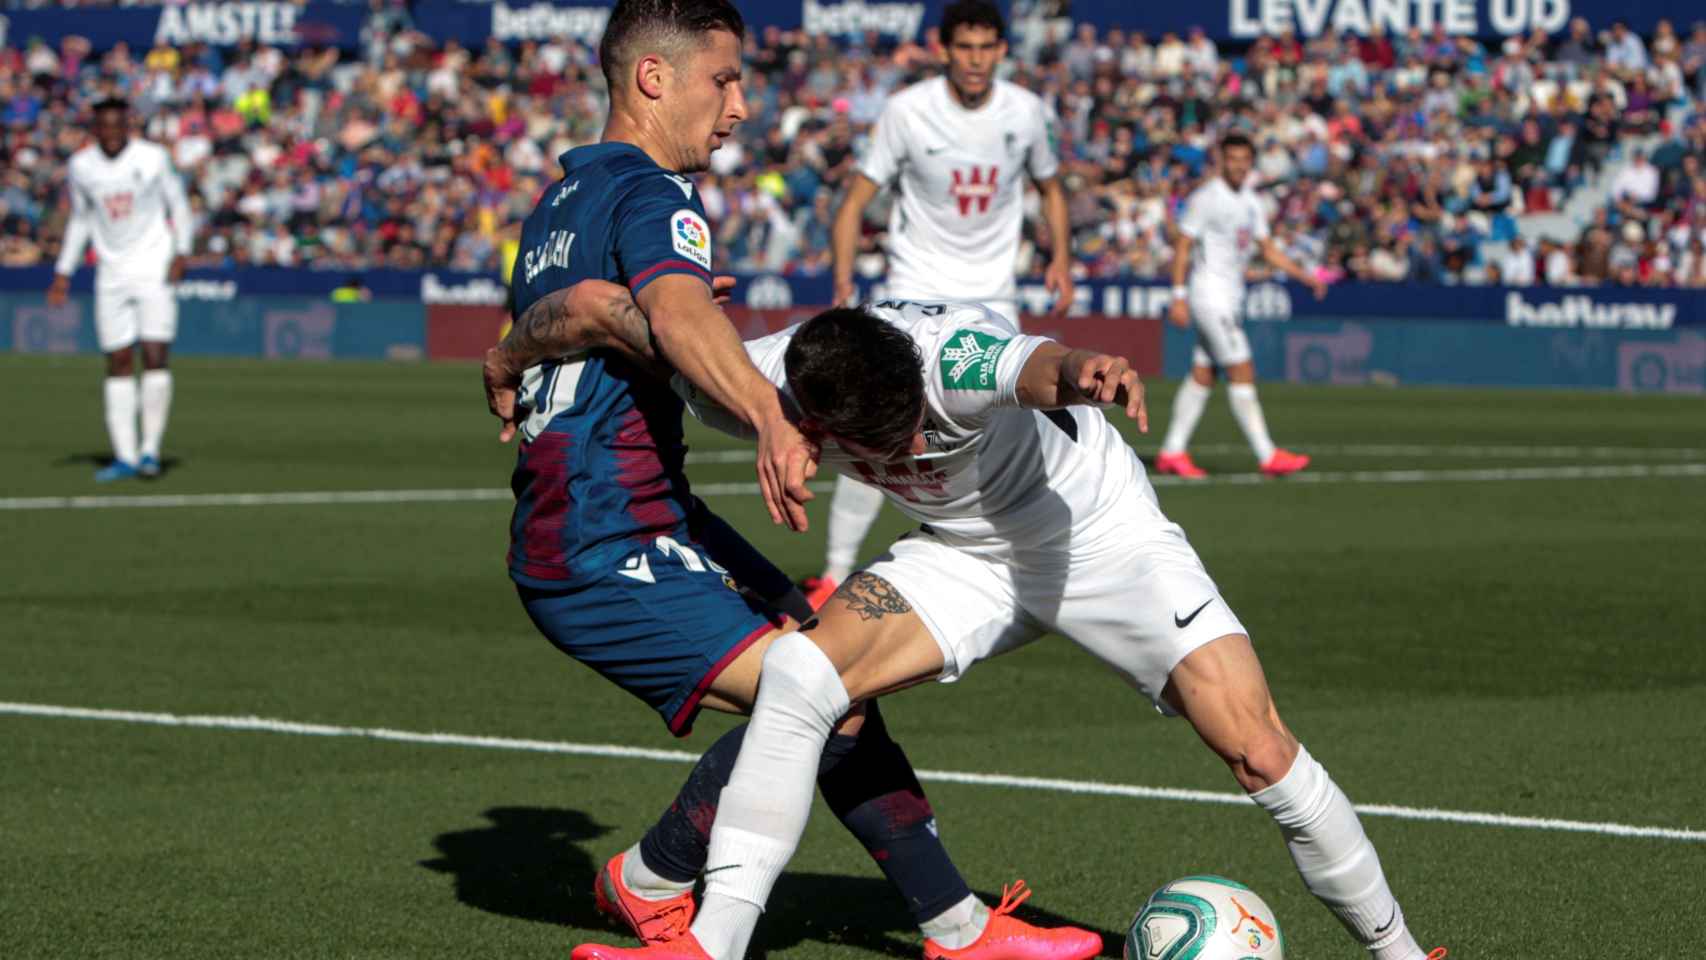 Jugadores de Levante y Granada disputando un balón en el encuentro liguero.